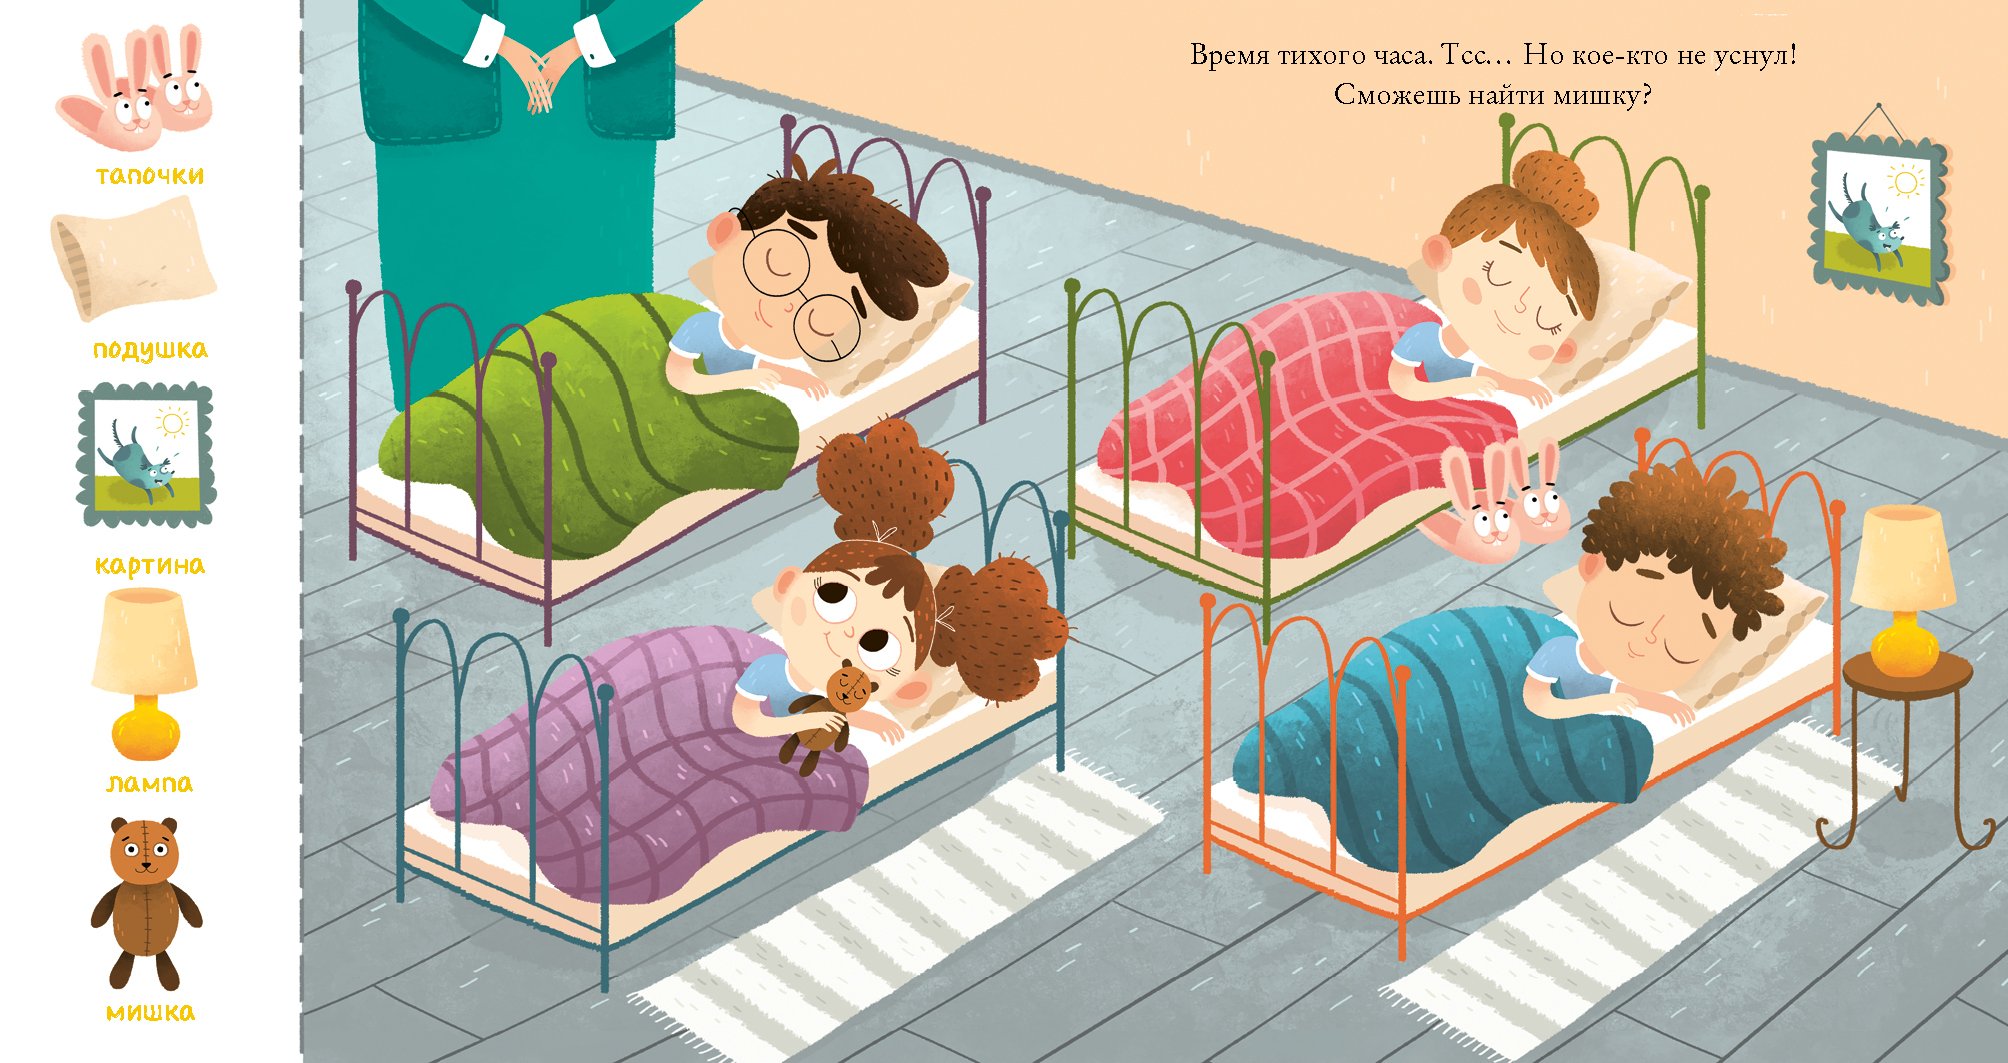 Дневной тихий час. Сонный час в детском саду. Сон в детском саду иллюстрация. Сон час в детском саду. Дети спят в детском саду.